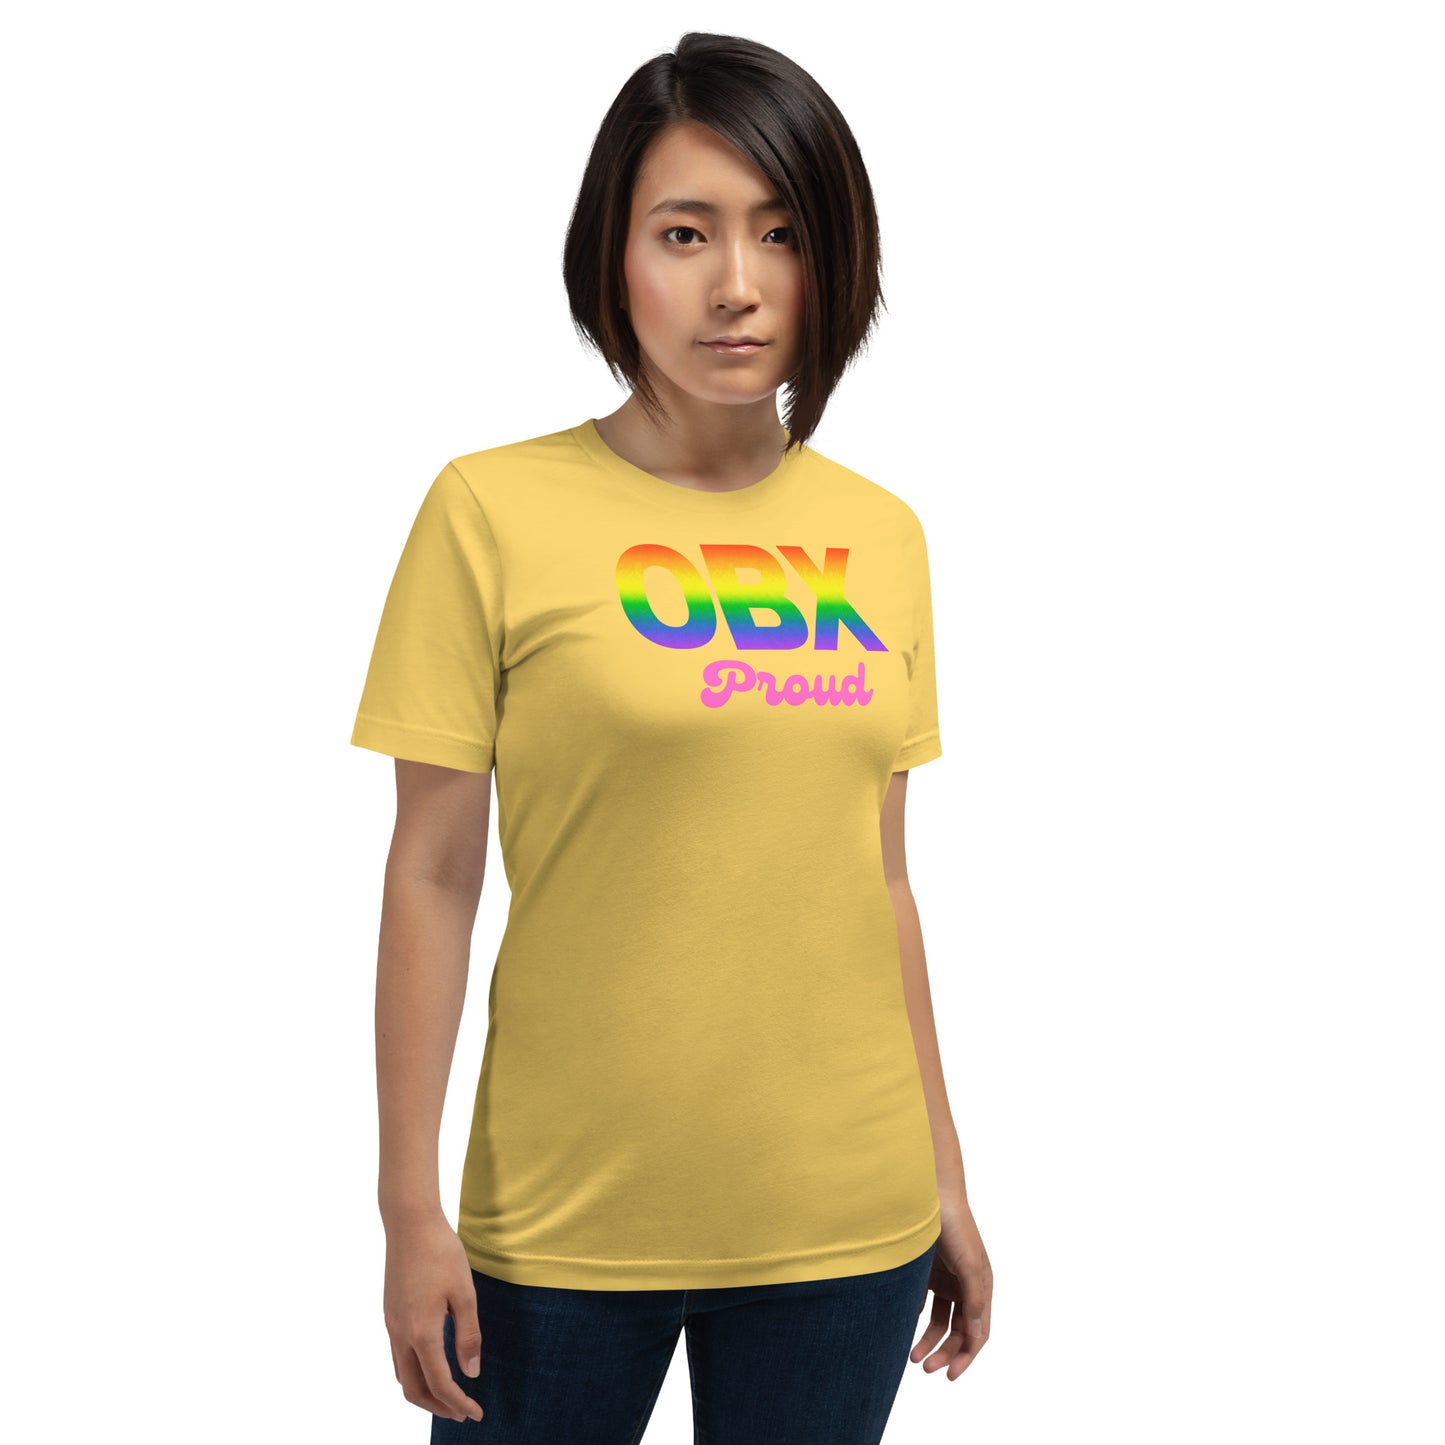 "OBX Proud" unisex t-shirt